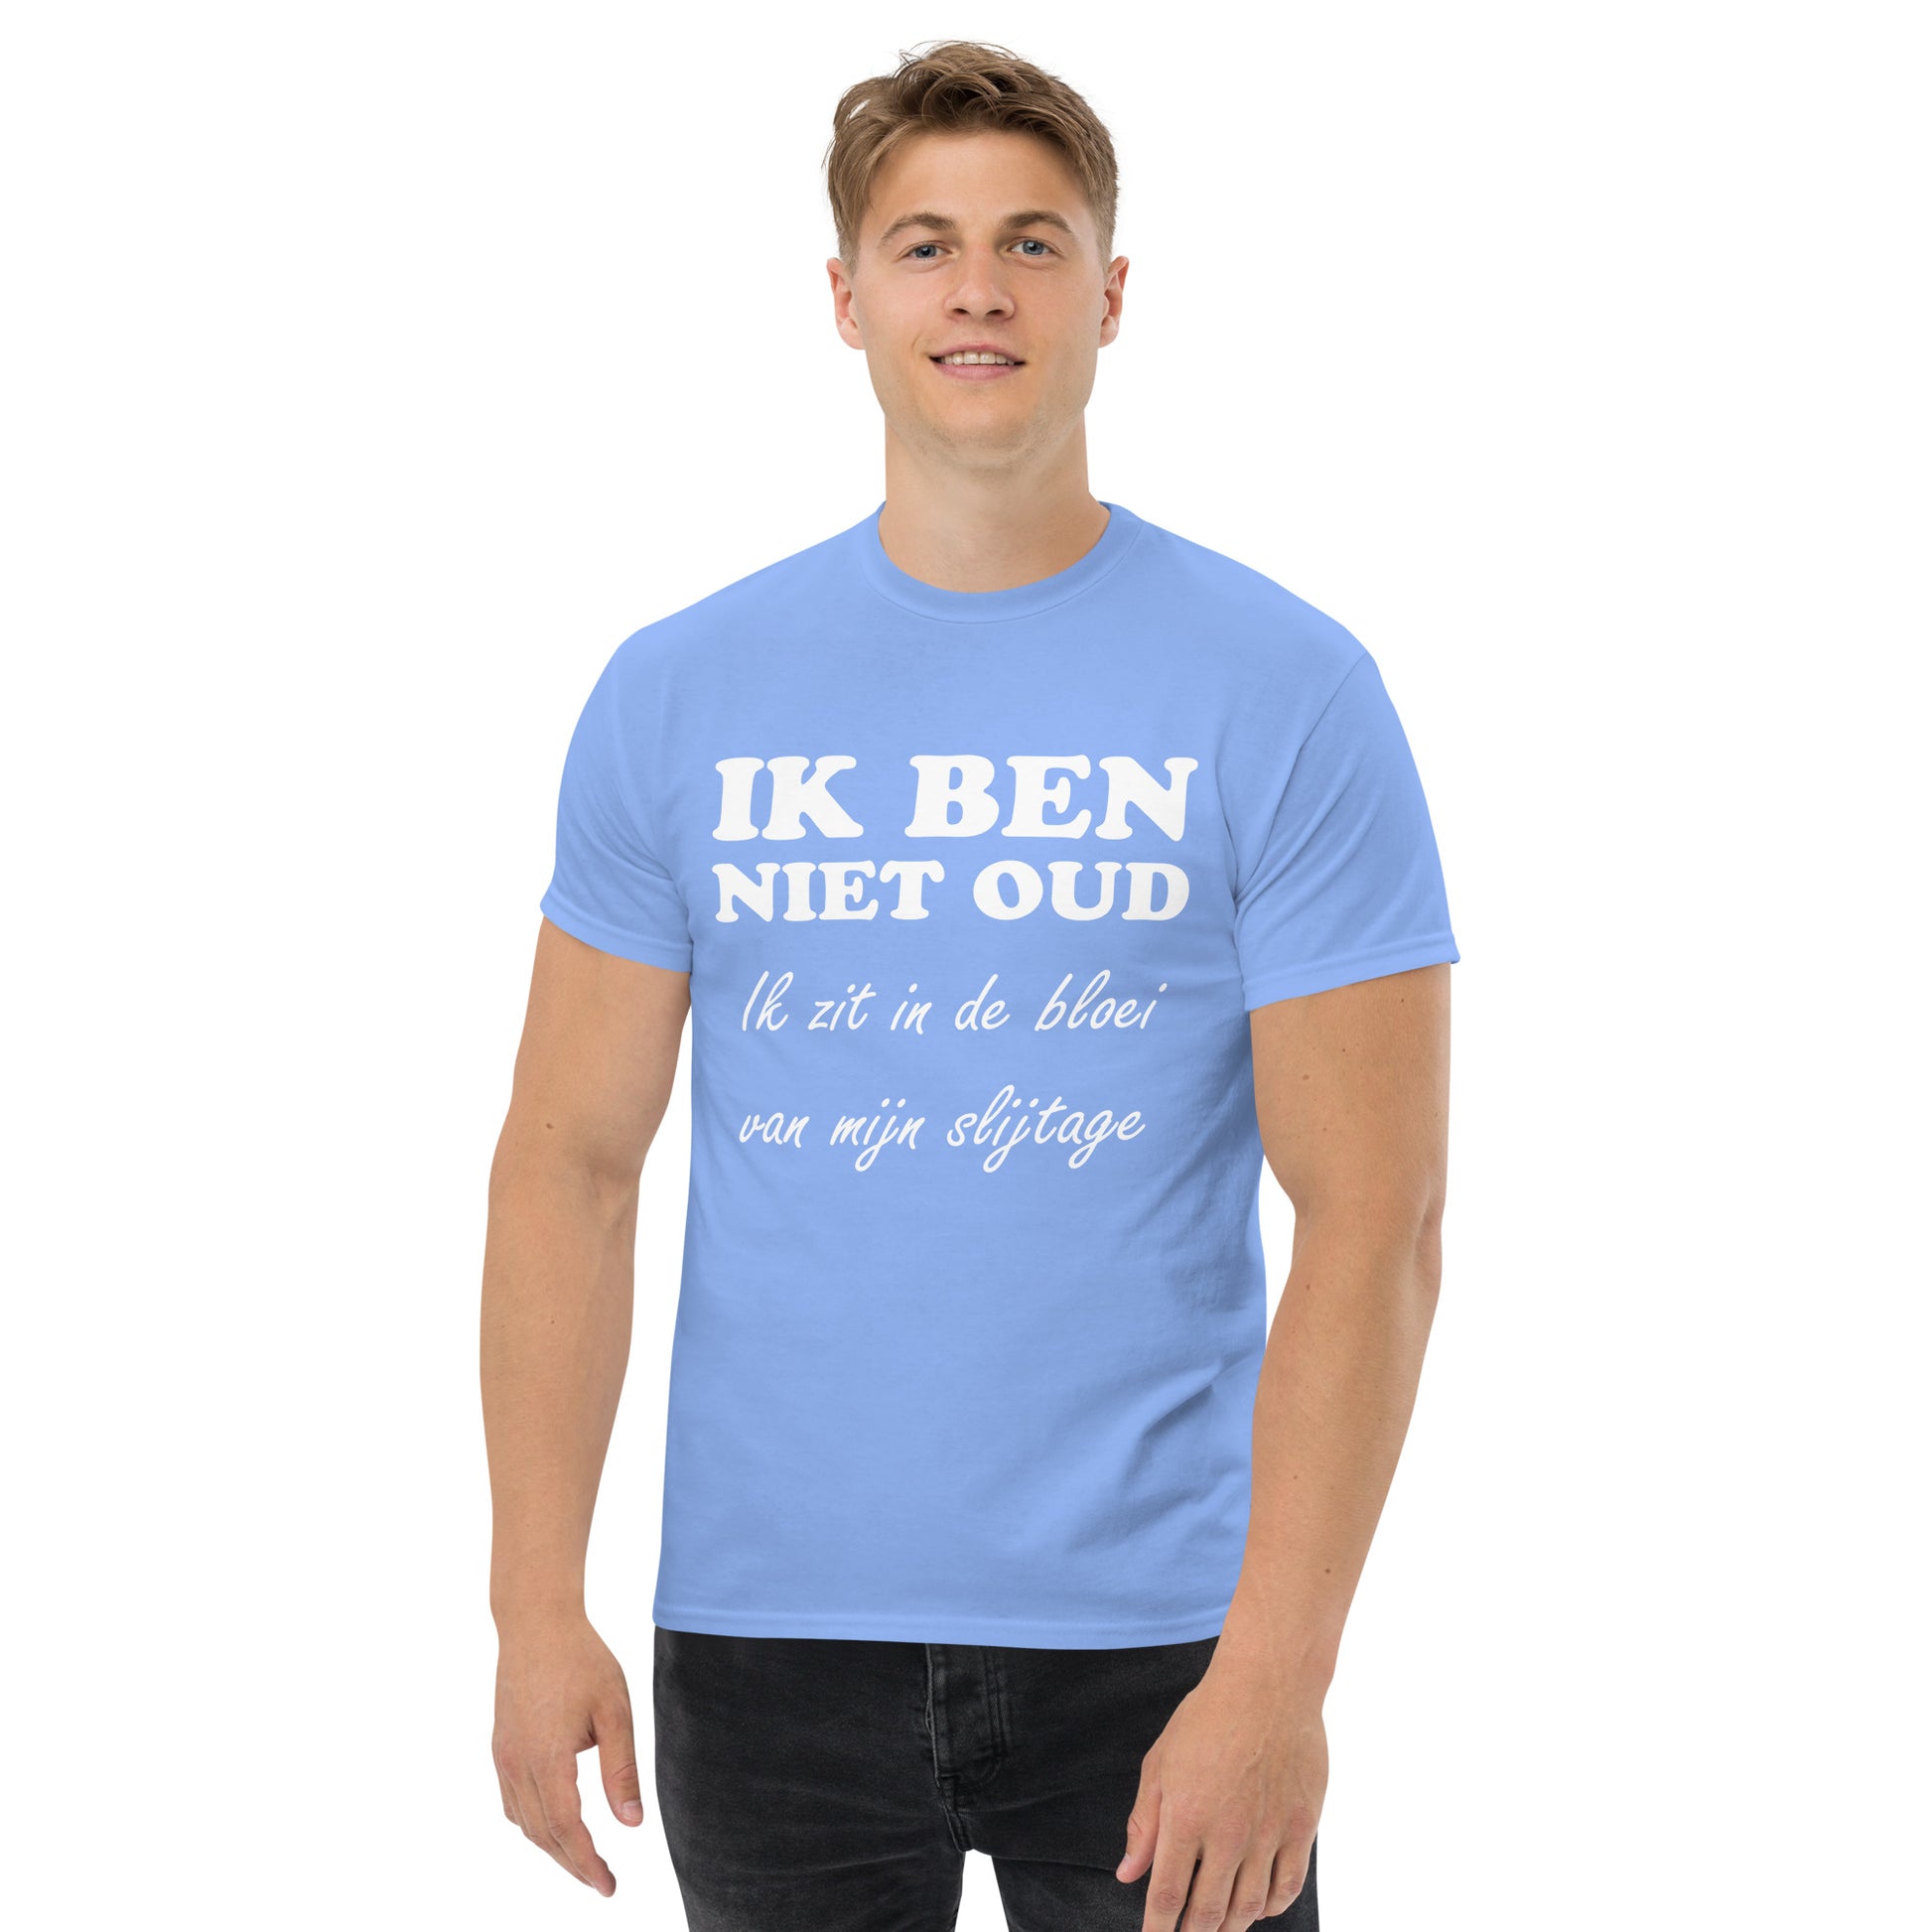 Men with Carolina blue T-shirt with the text in white "IK BEN NIET OUD ik zit in de bloei van mijn slijtage"